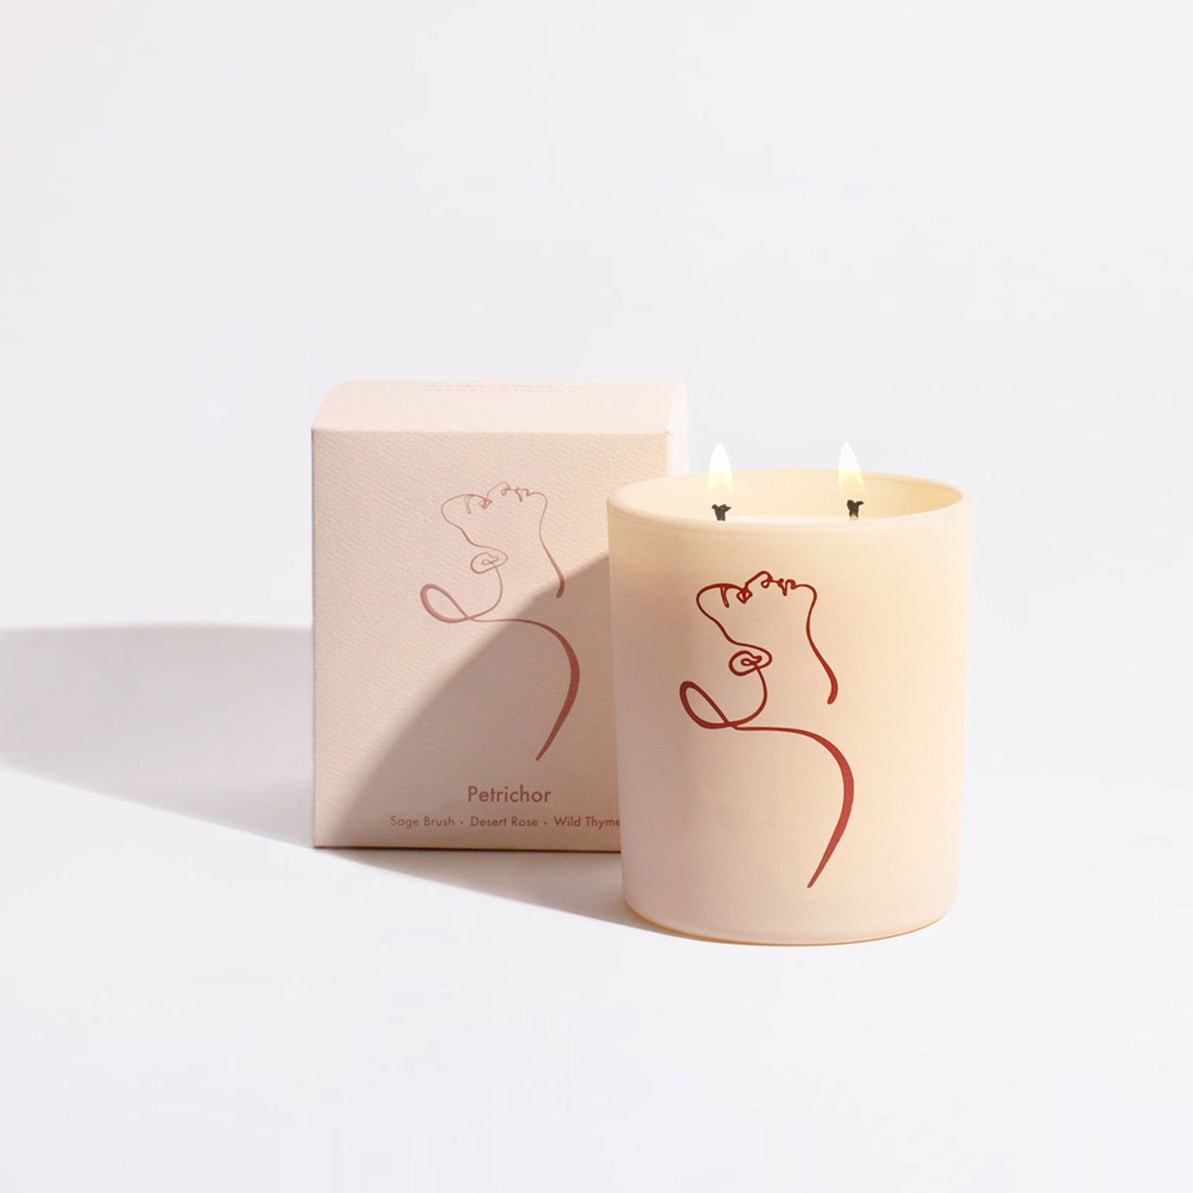 Brooklyn Candle Studio Petrichor - Allison Kunath Artist Edition Candle - lily & onyx